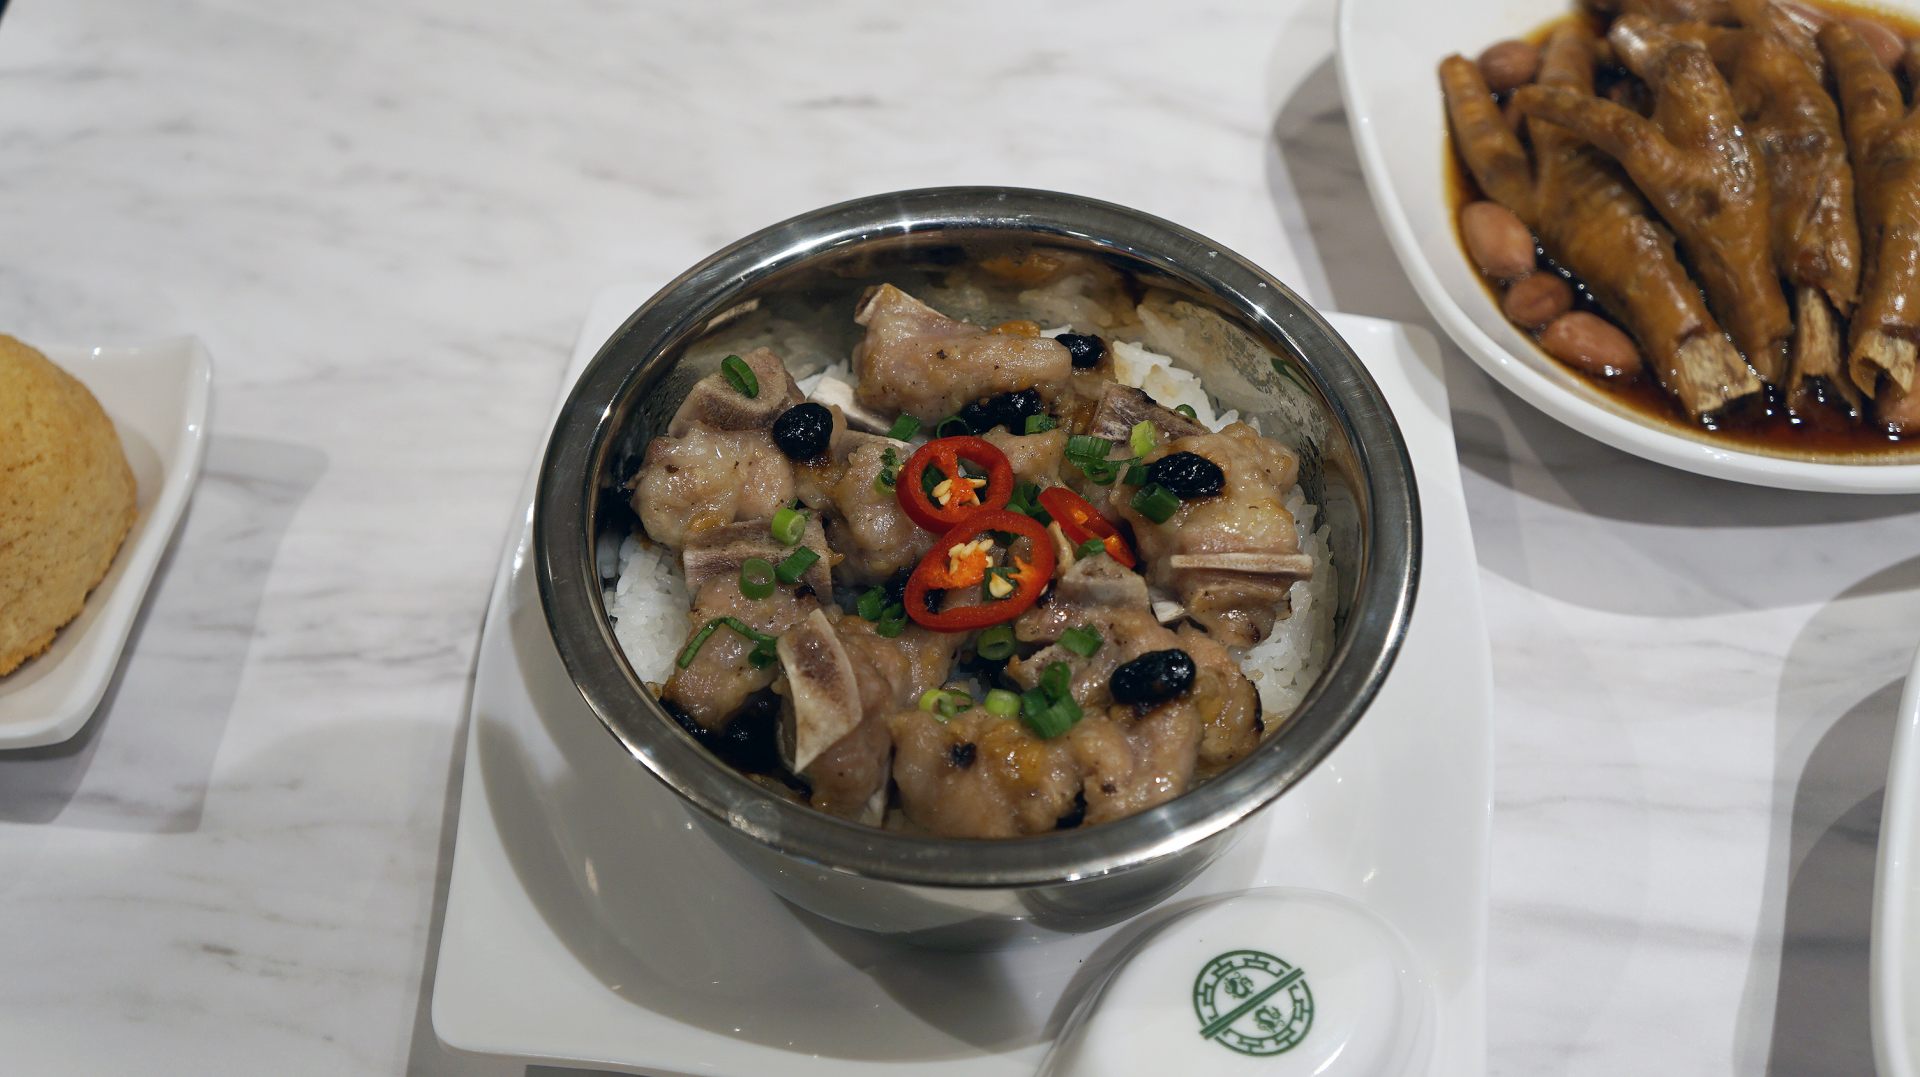 「スペアリブの蒸しご飯」。香港に行くと「丼物」的な飲茶がよく注文されています